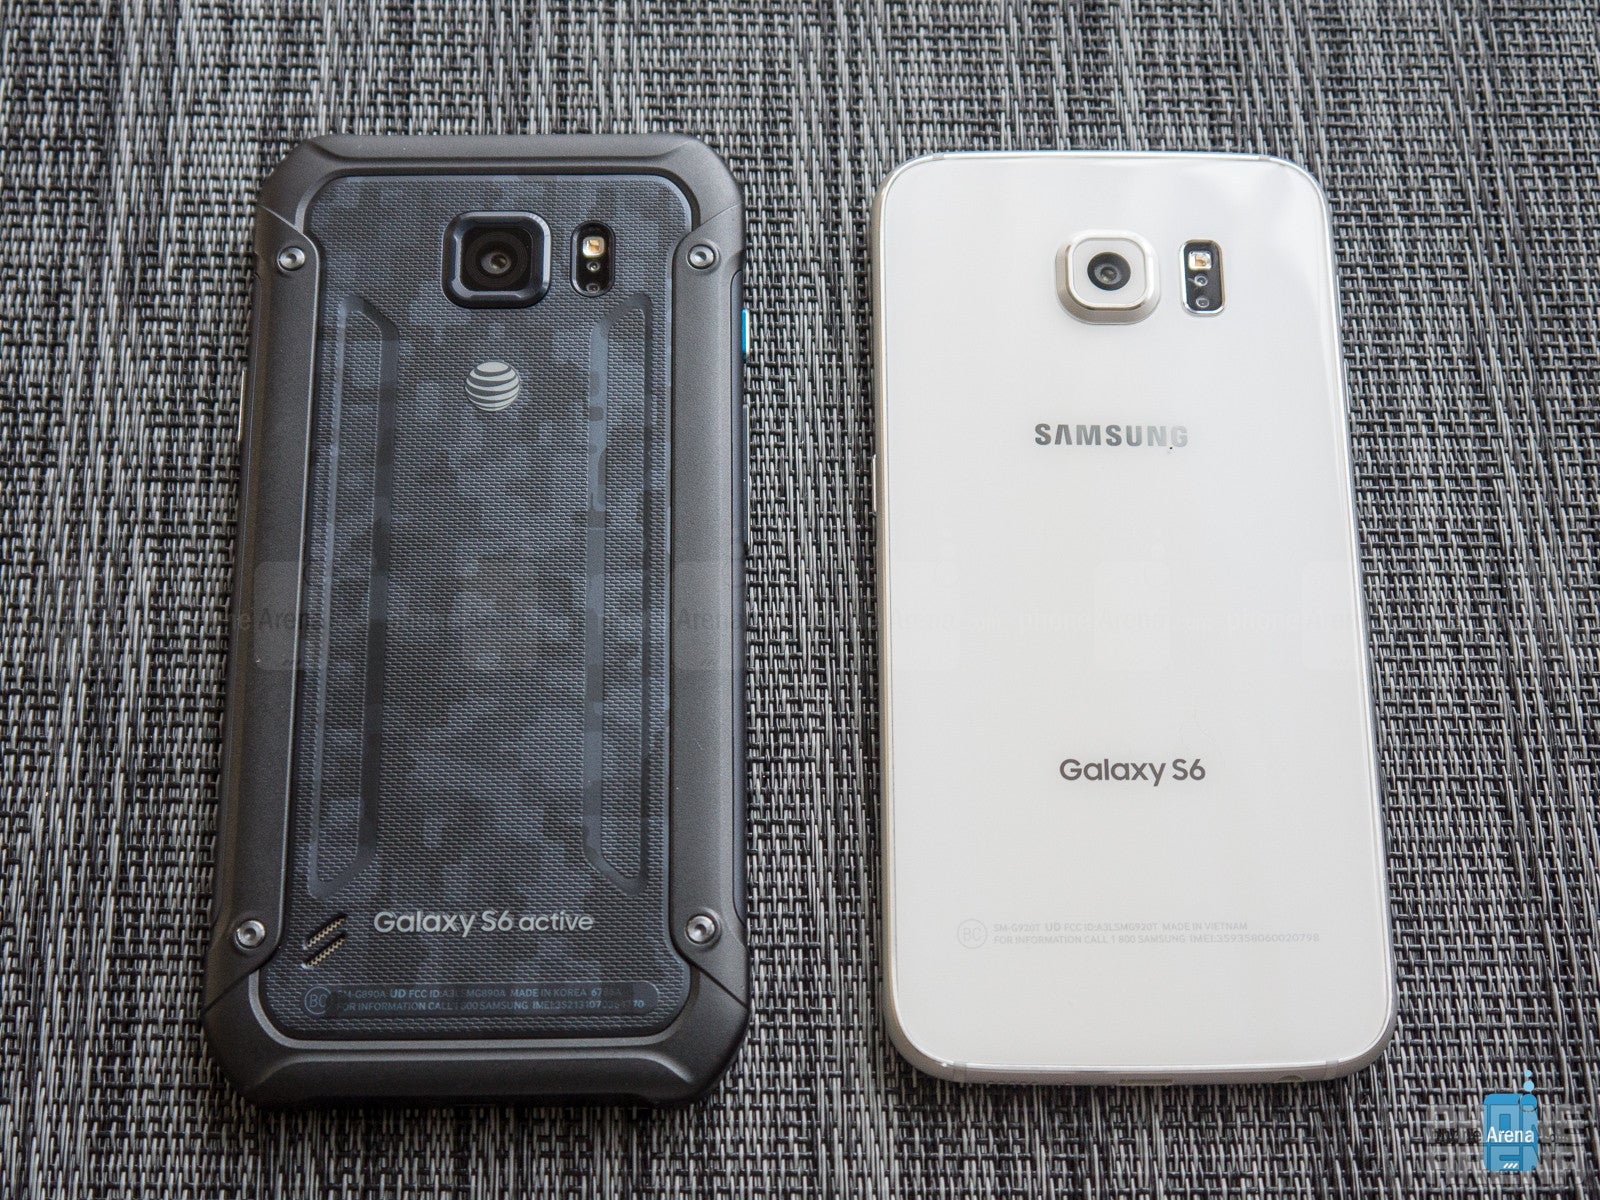 Samsung Galaxy S6 Active vs Samsung Galaxy S6